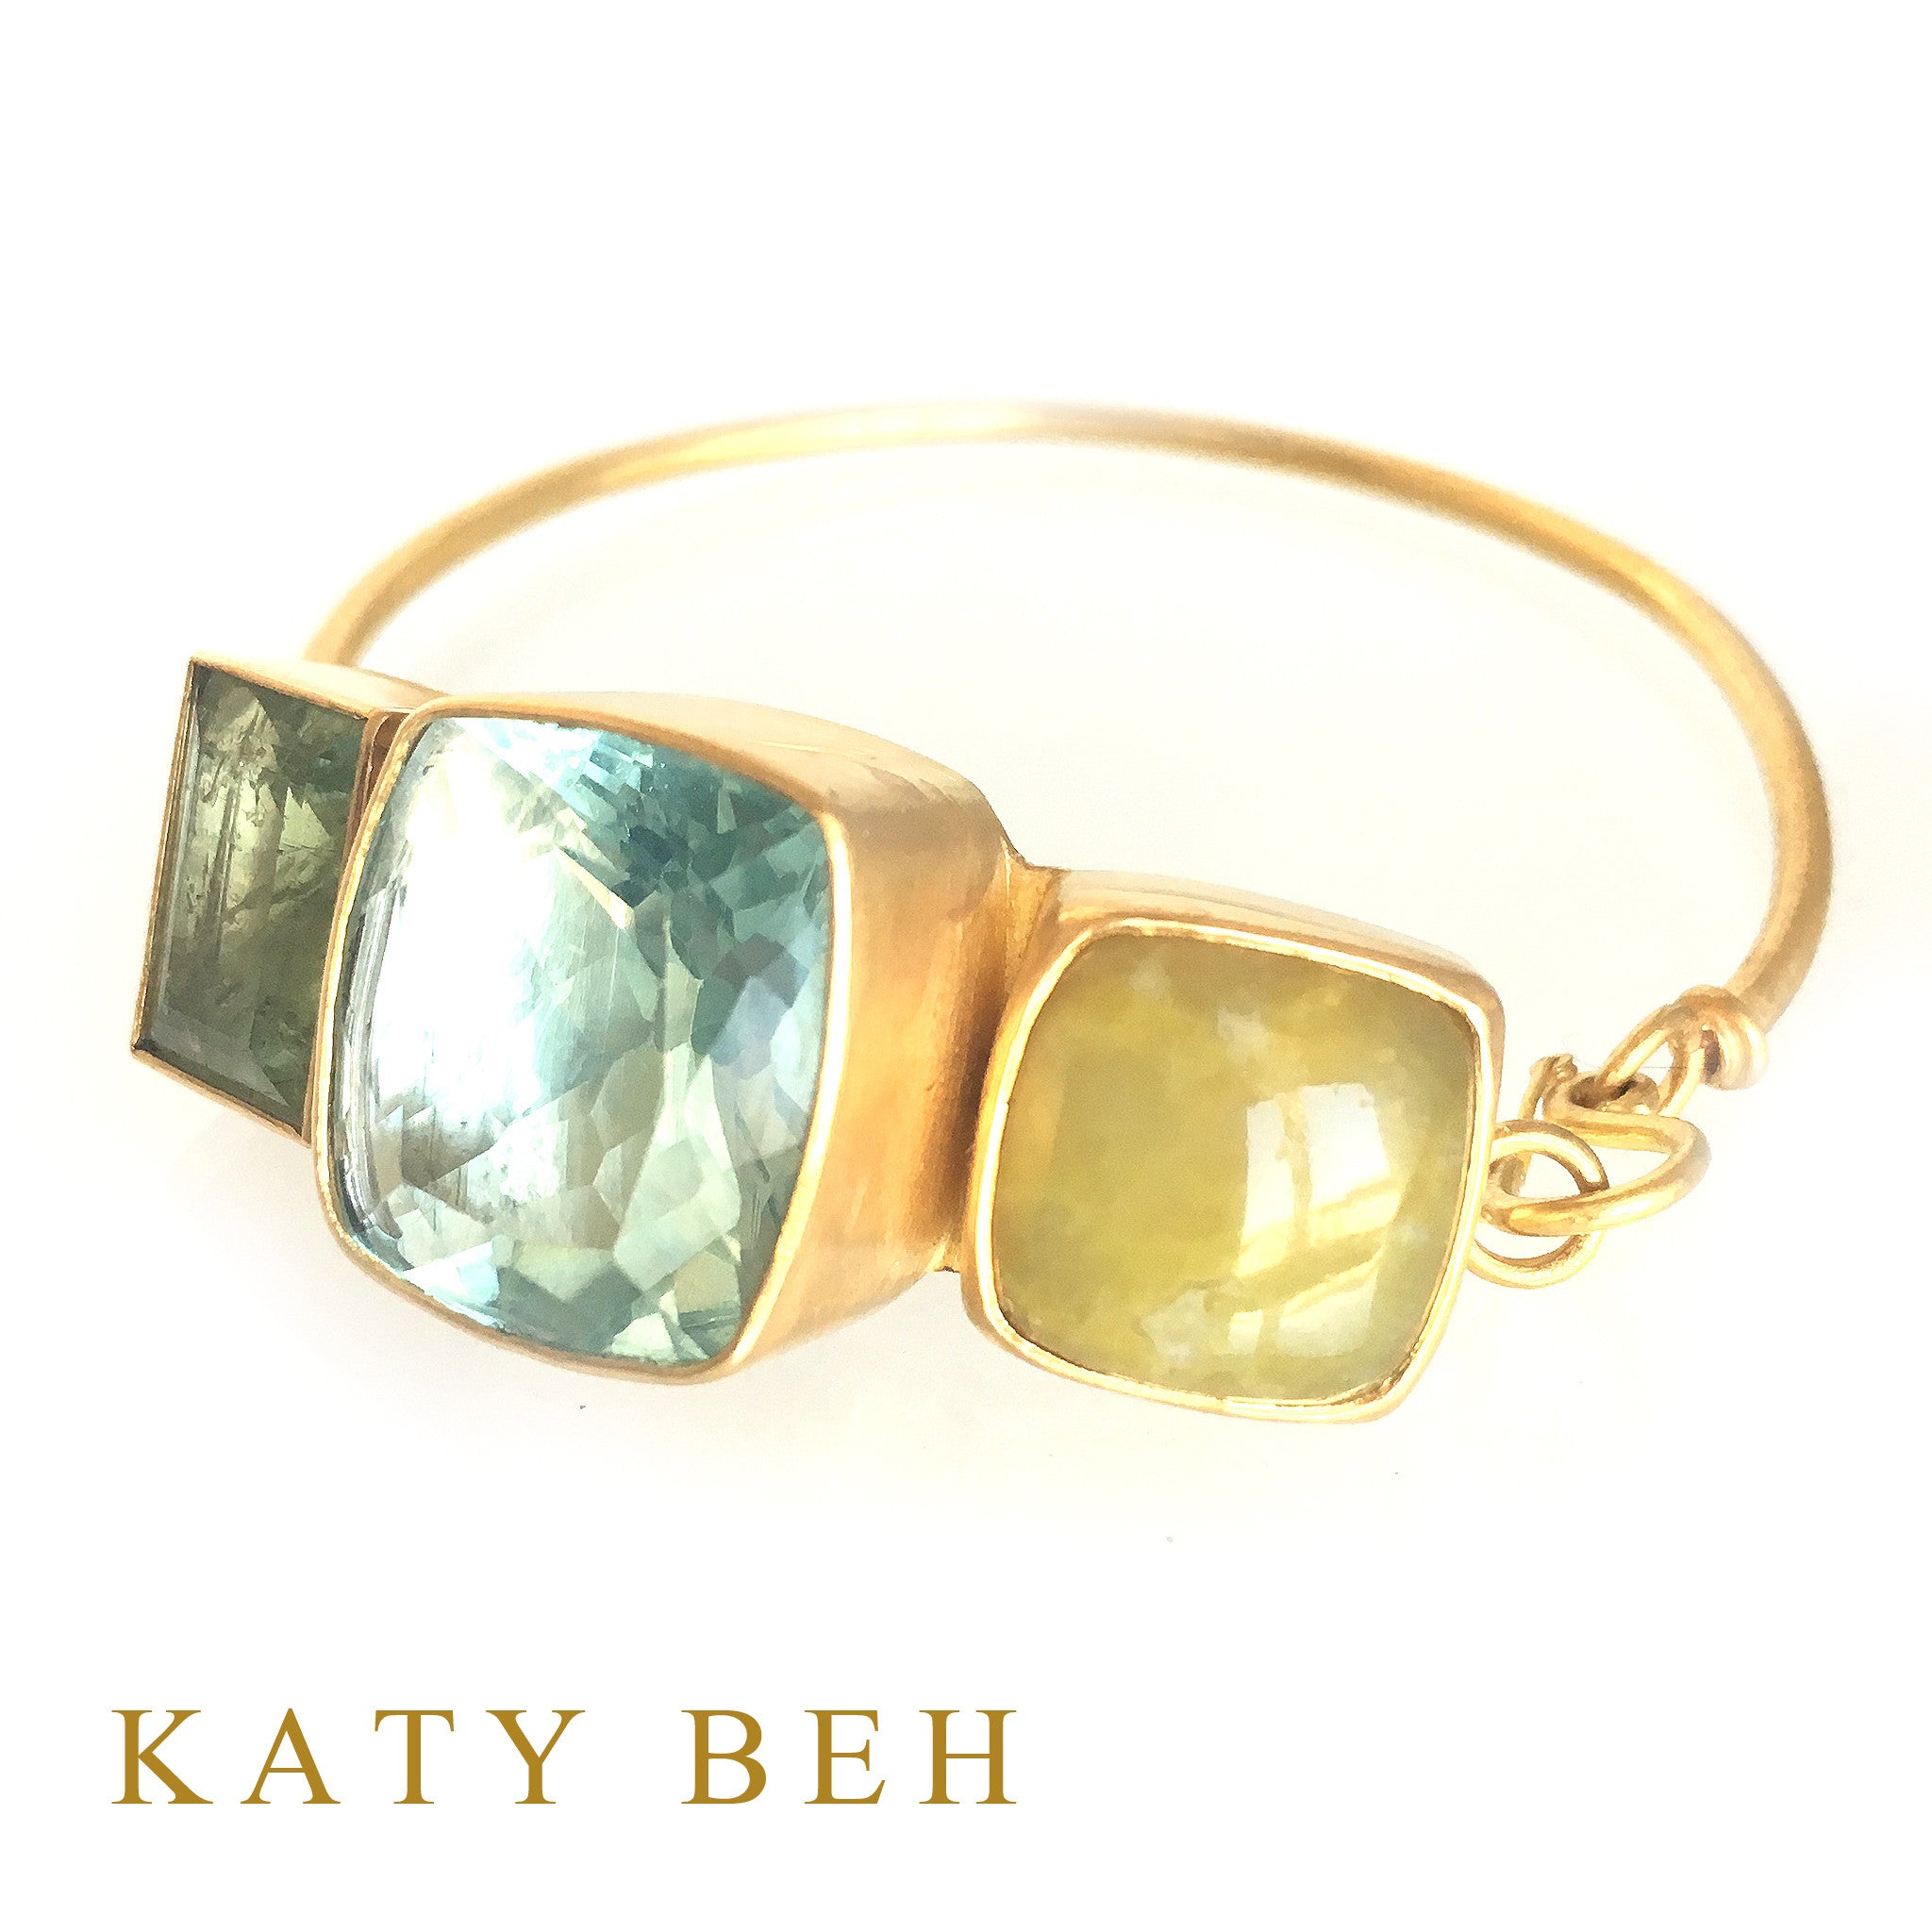 Michelle Bracelet - Katy Beh Jewelry - 1